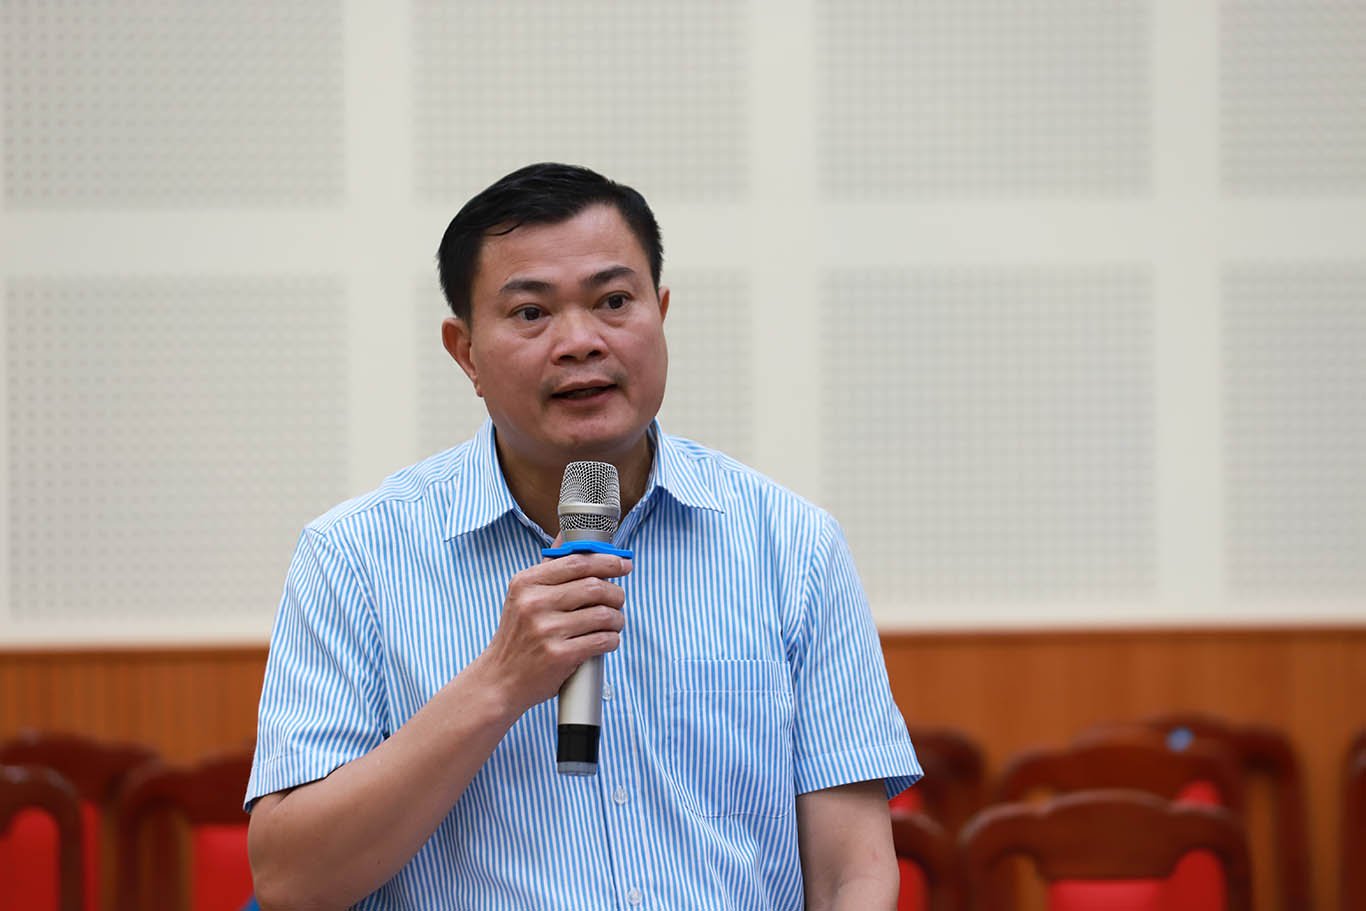 Ông Nguyễn Đình Thắng - Chủ tịch Công đoàn Khu công nghiệp và Chế xuất Hà Nội. Ảnh: Tô Thế